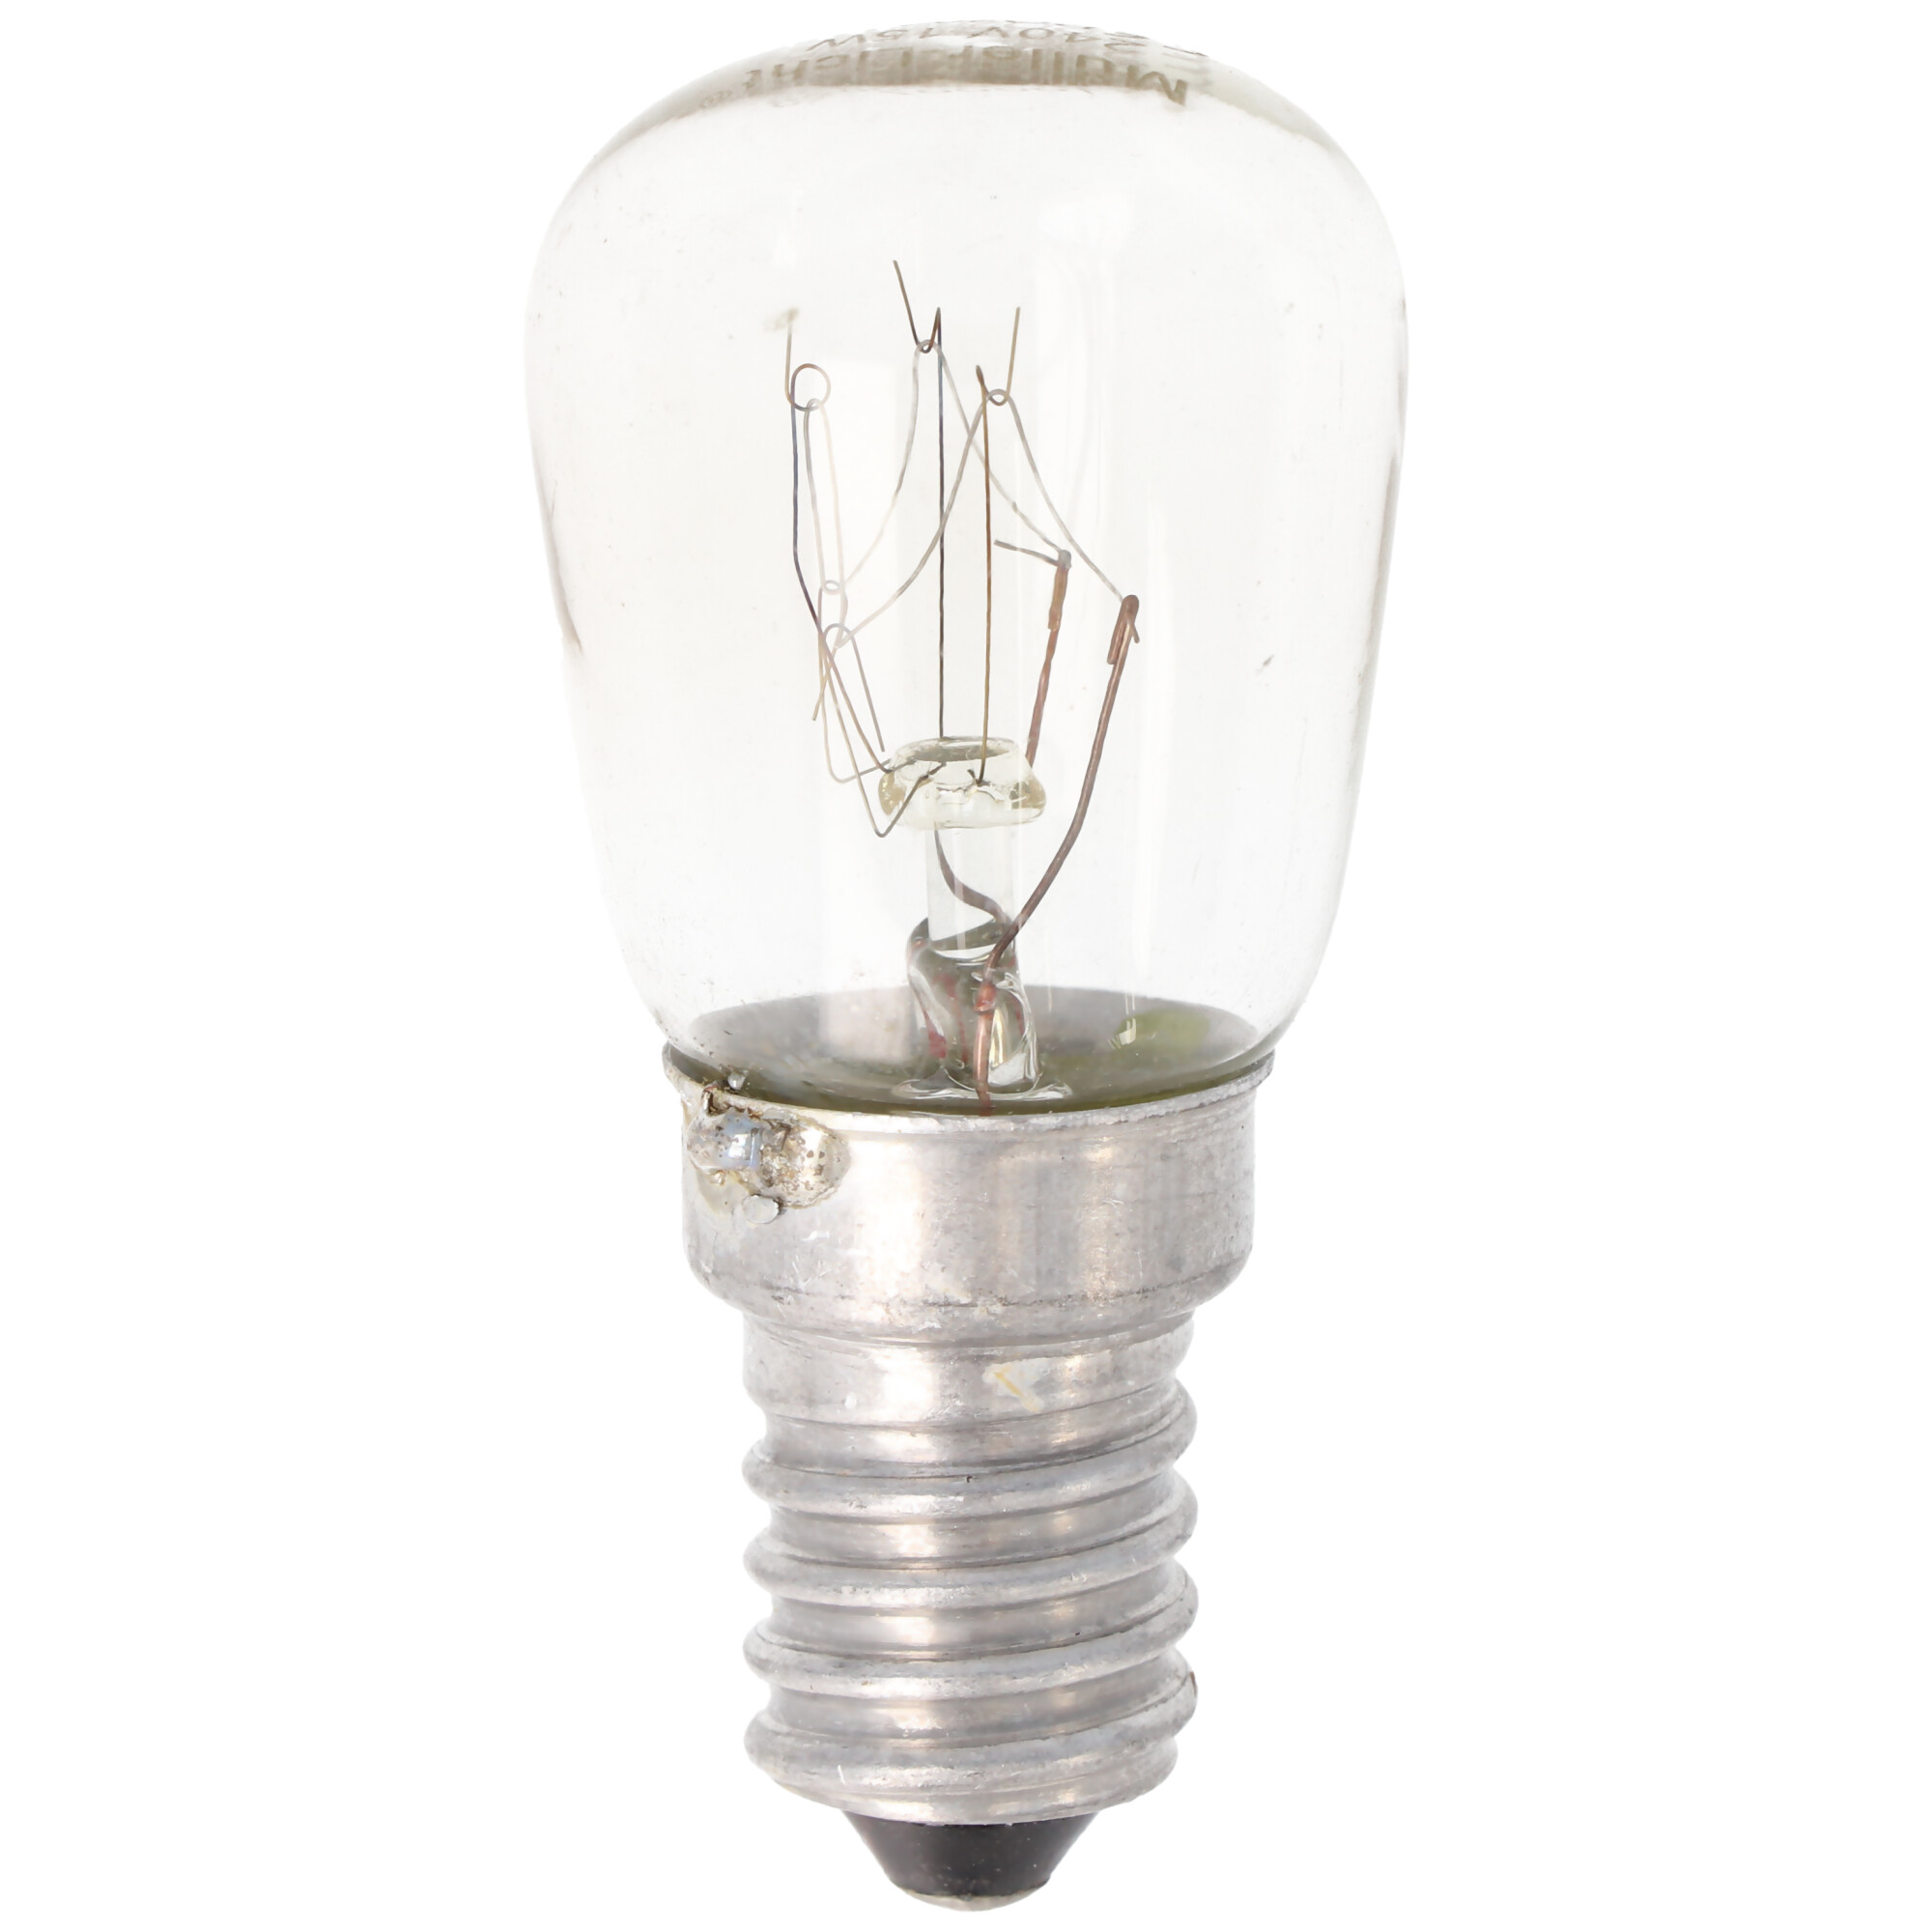 Lampe de four E14, 15 watts résistant à la température jusqu'à 300